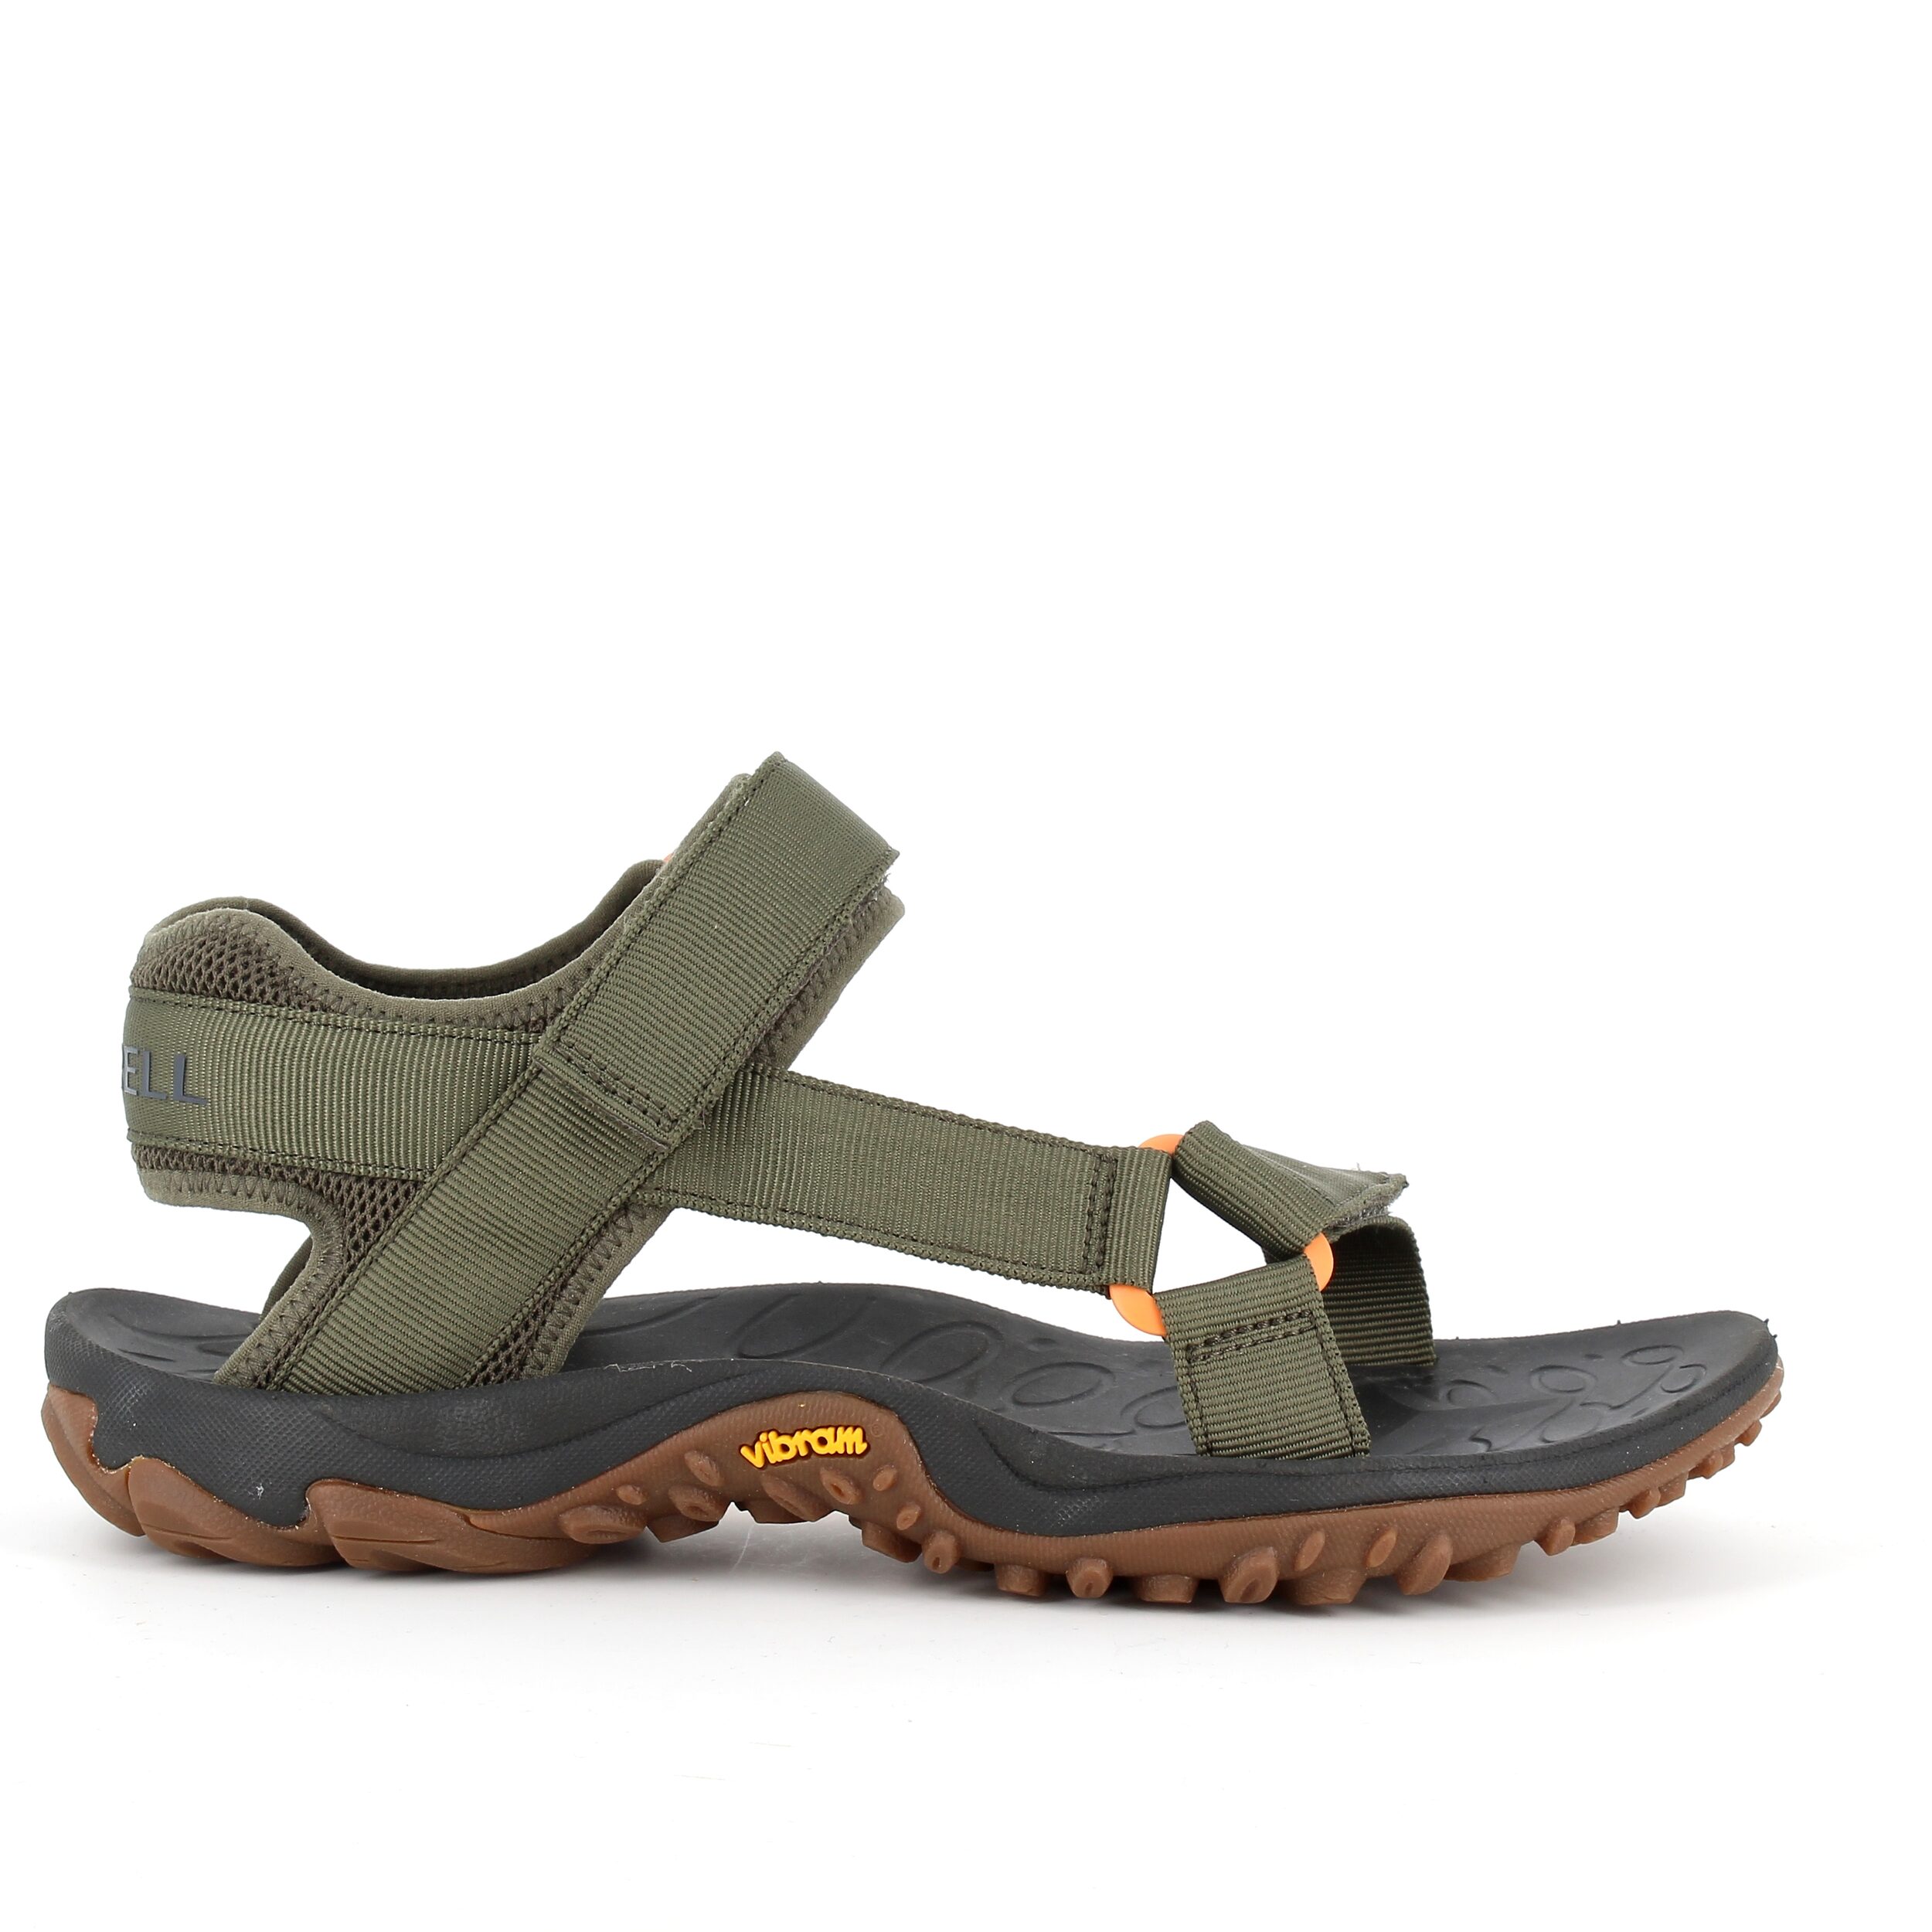 #2 - Grøn sandal fra Merrell med fleksibel gummi bund - 46